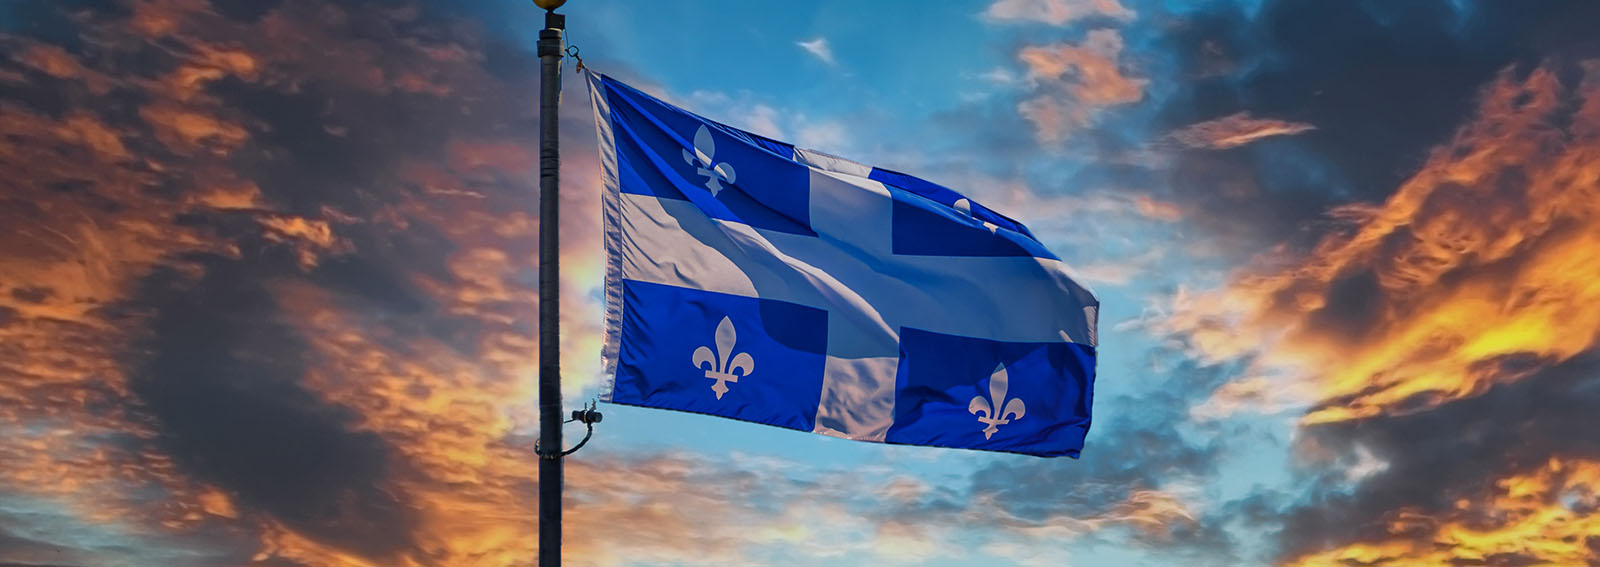 Quebec flag flying during a sunset